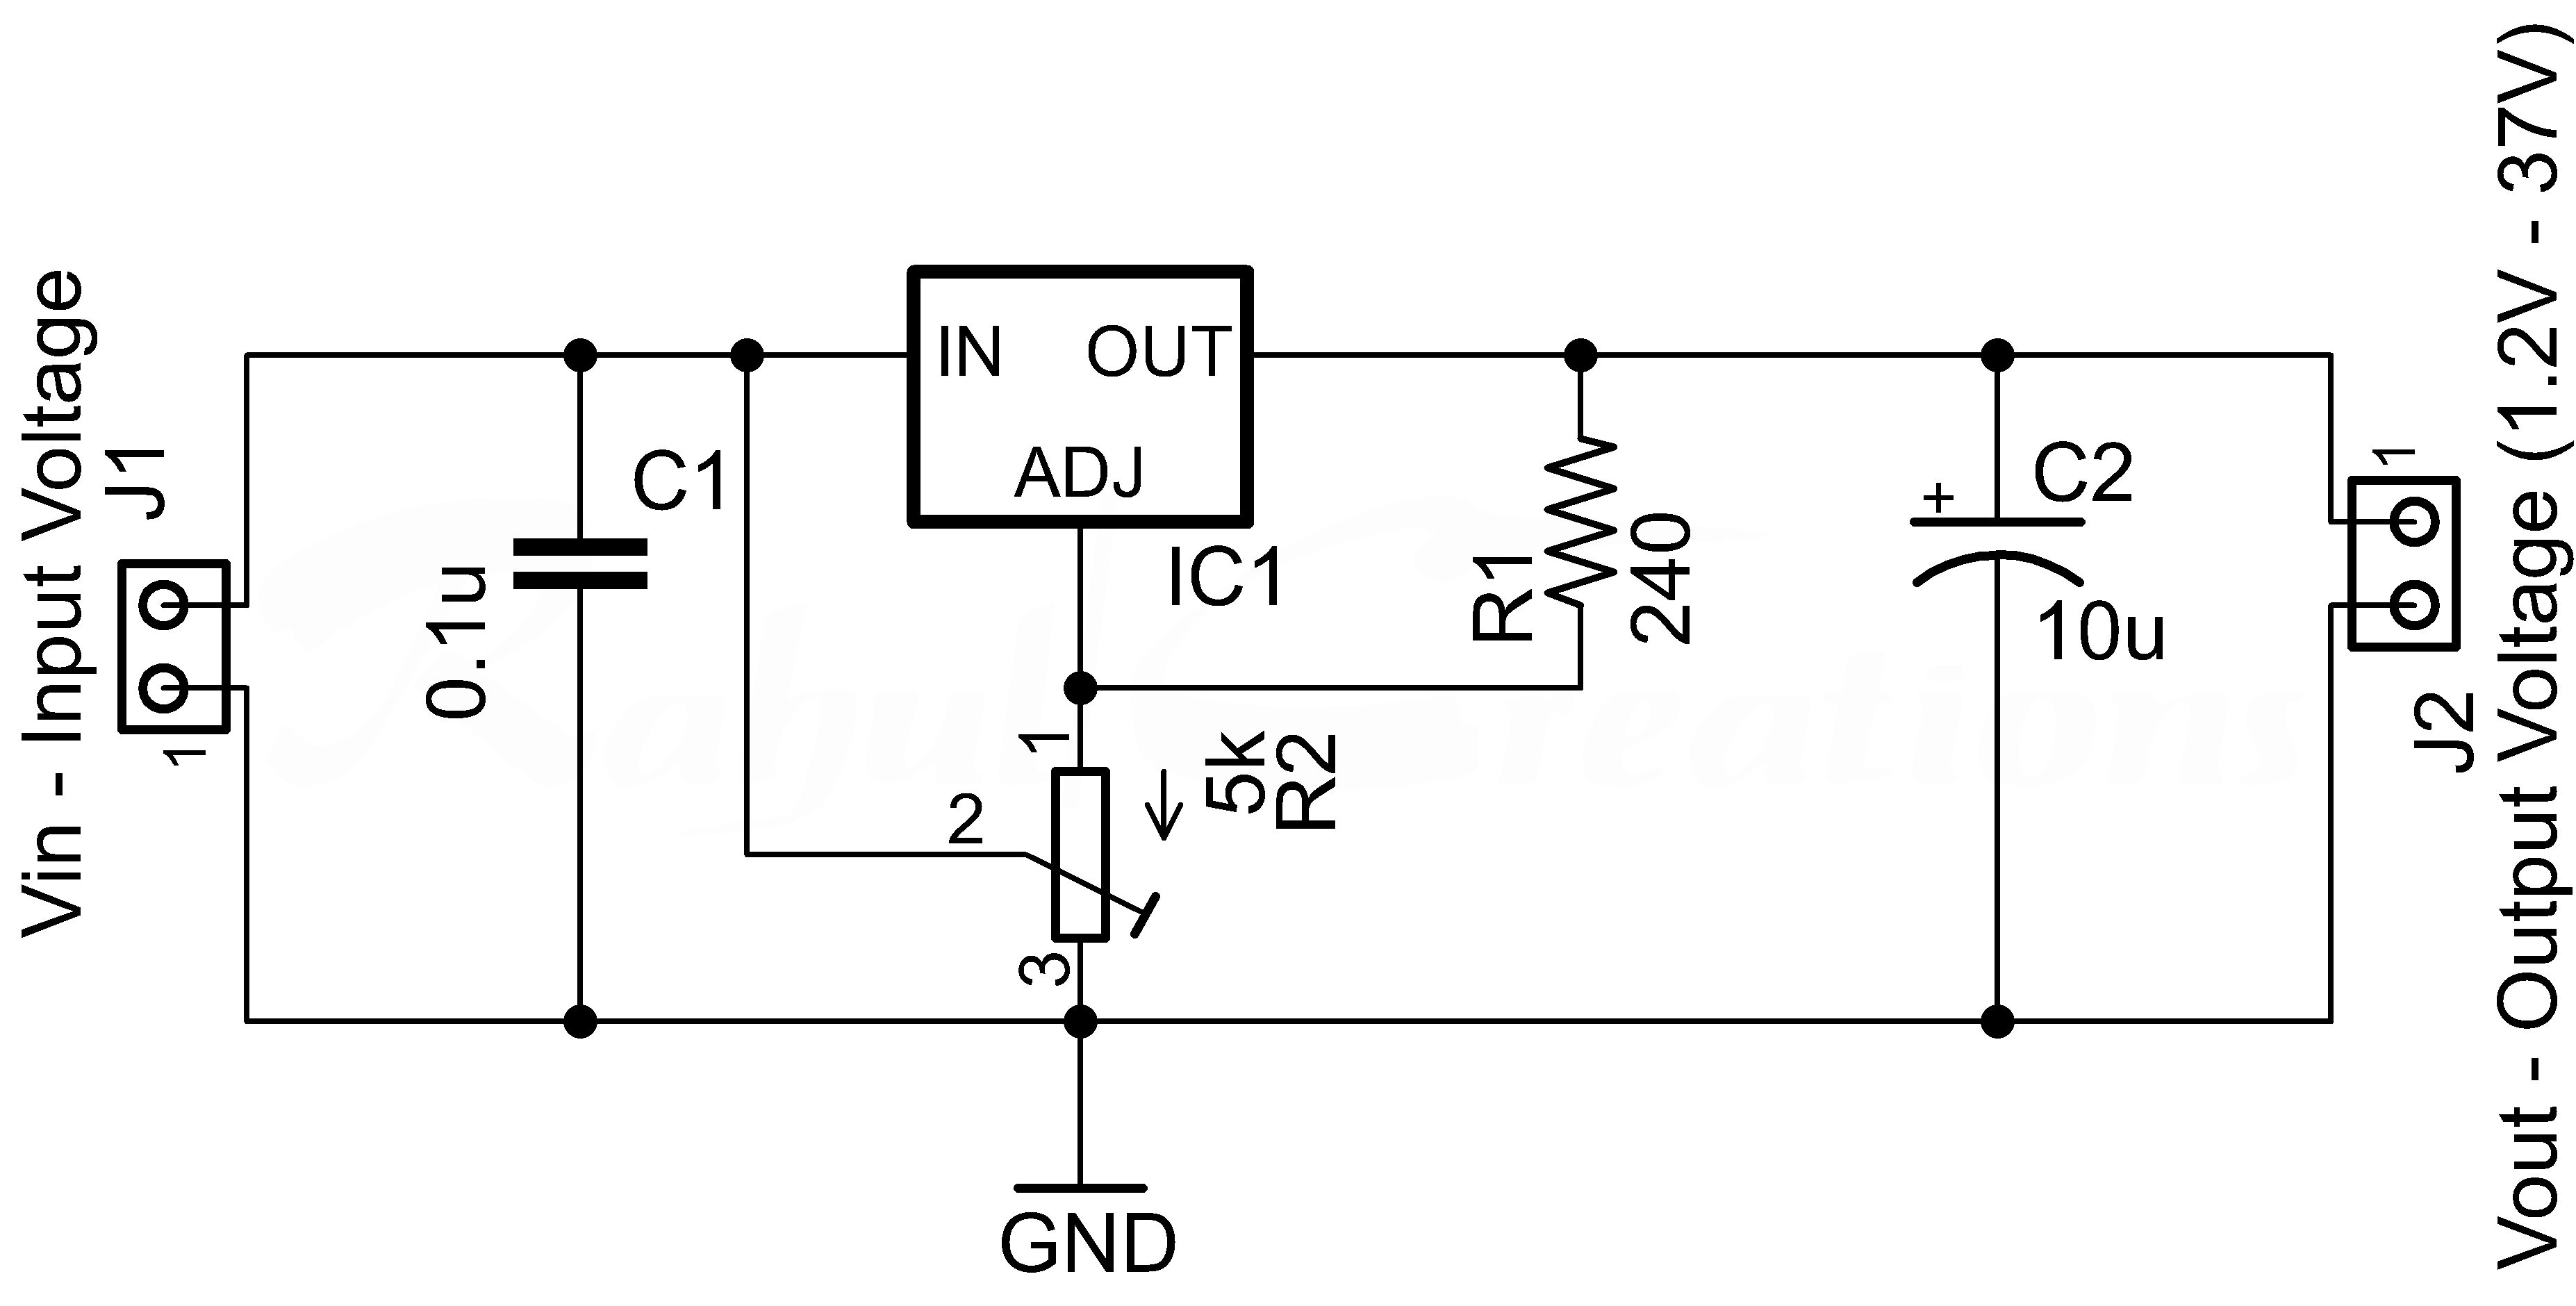 wiring diagram on volt wiring diagram also voltage regulator on rh 207 246 123 107